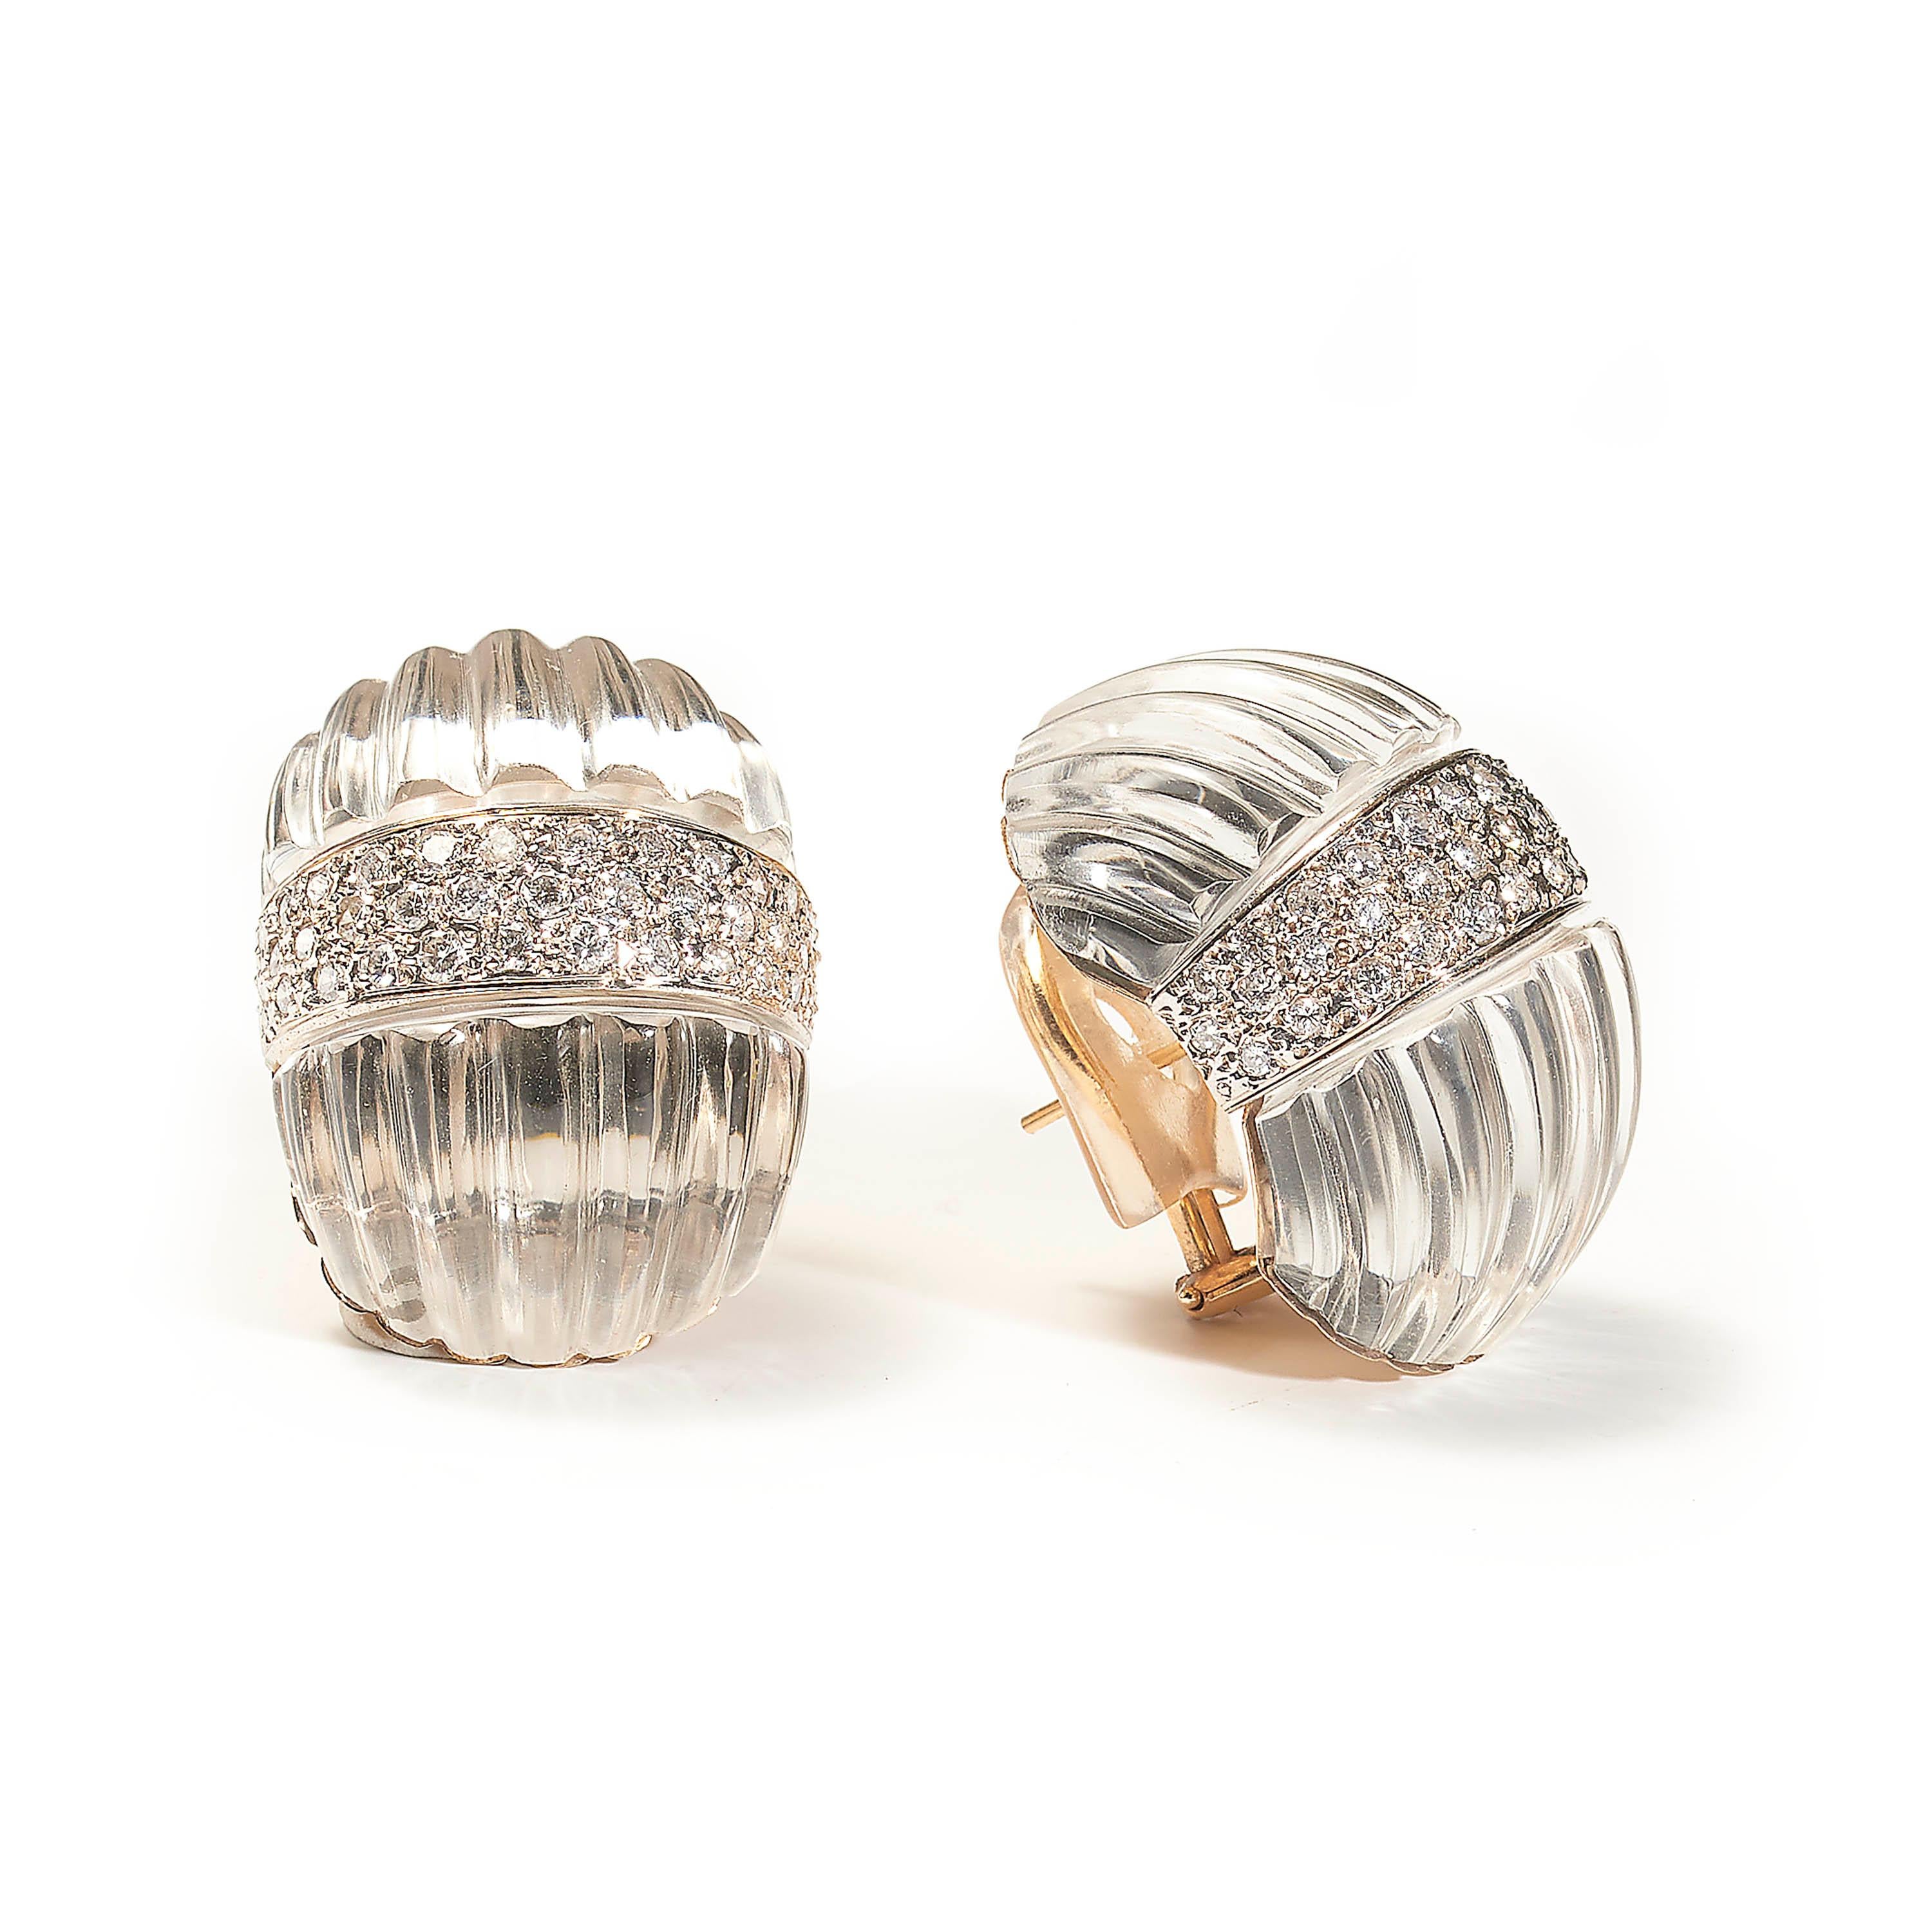 Ein Paar moderne Bergkristall- und Diamant-Ohrringe von Maz, bestehend aus zwei geriffelten Abschnitten aus Bergkristall, die ein zentrales Band aus Diamanten im Brillantschliff mit Pavé-Fassung flankieren, mit einem geschätzten Gesamtgewicht von